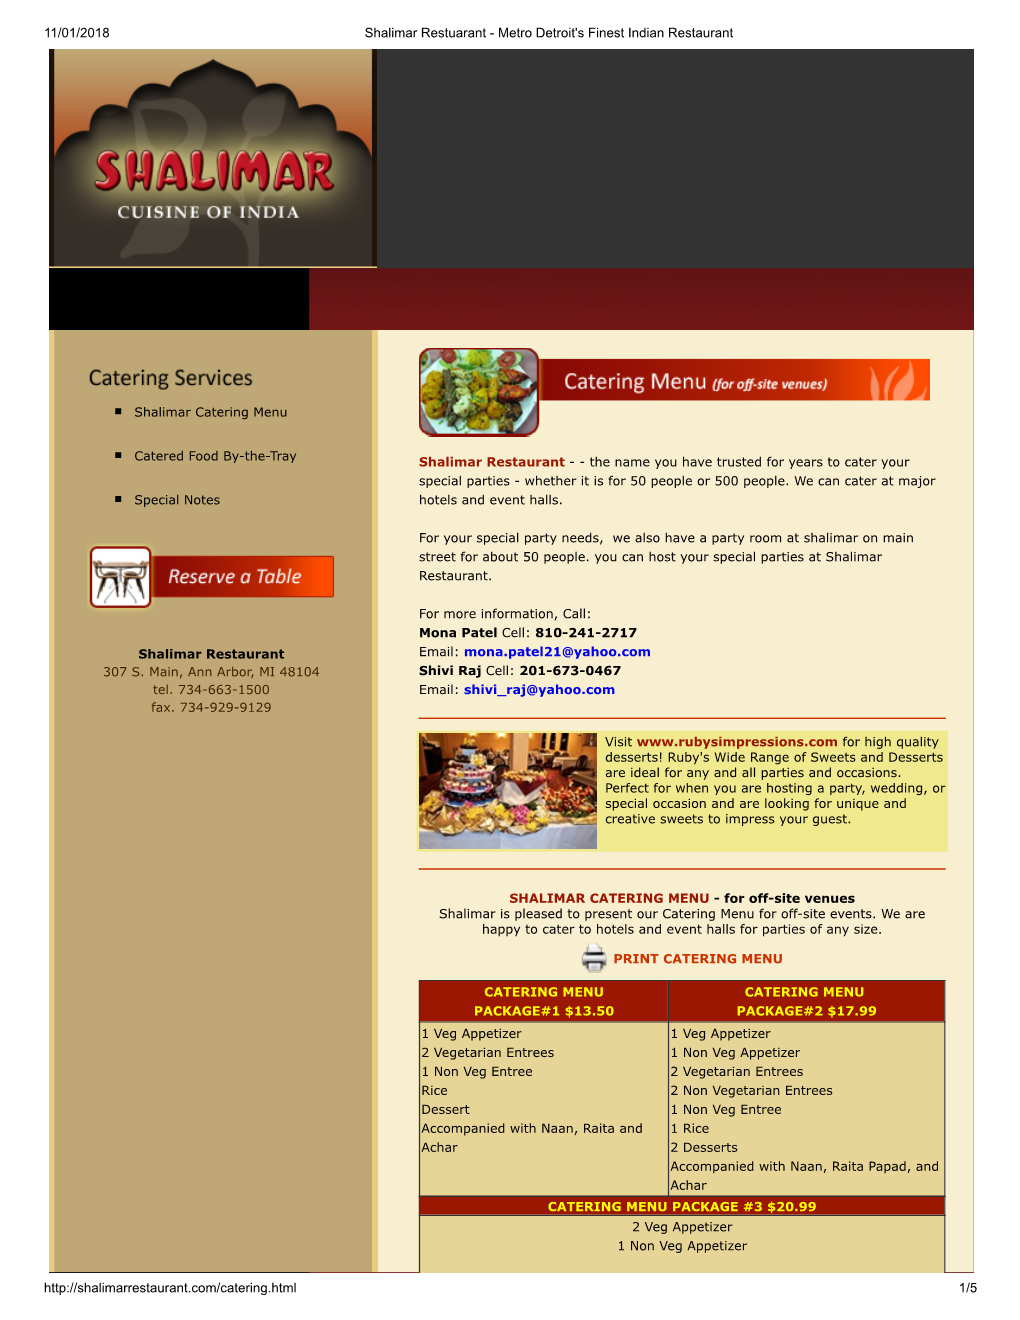 Shalimar Catering Menu